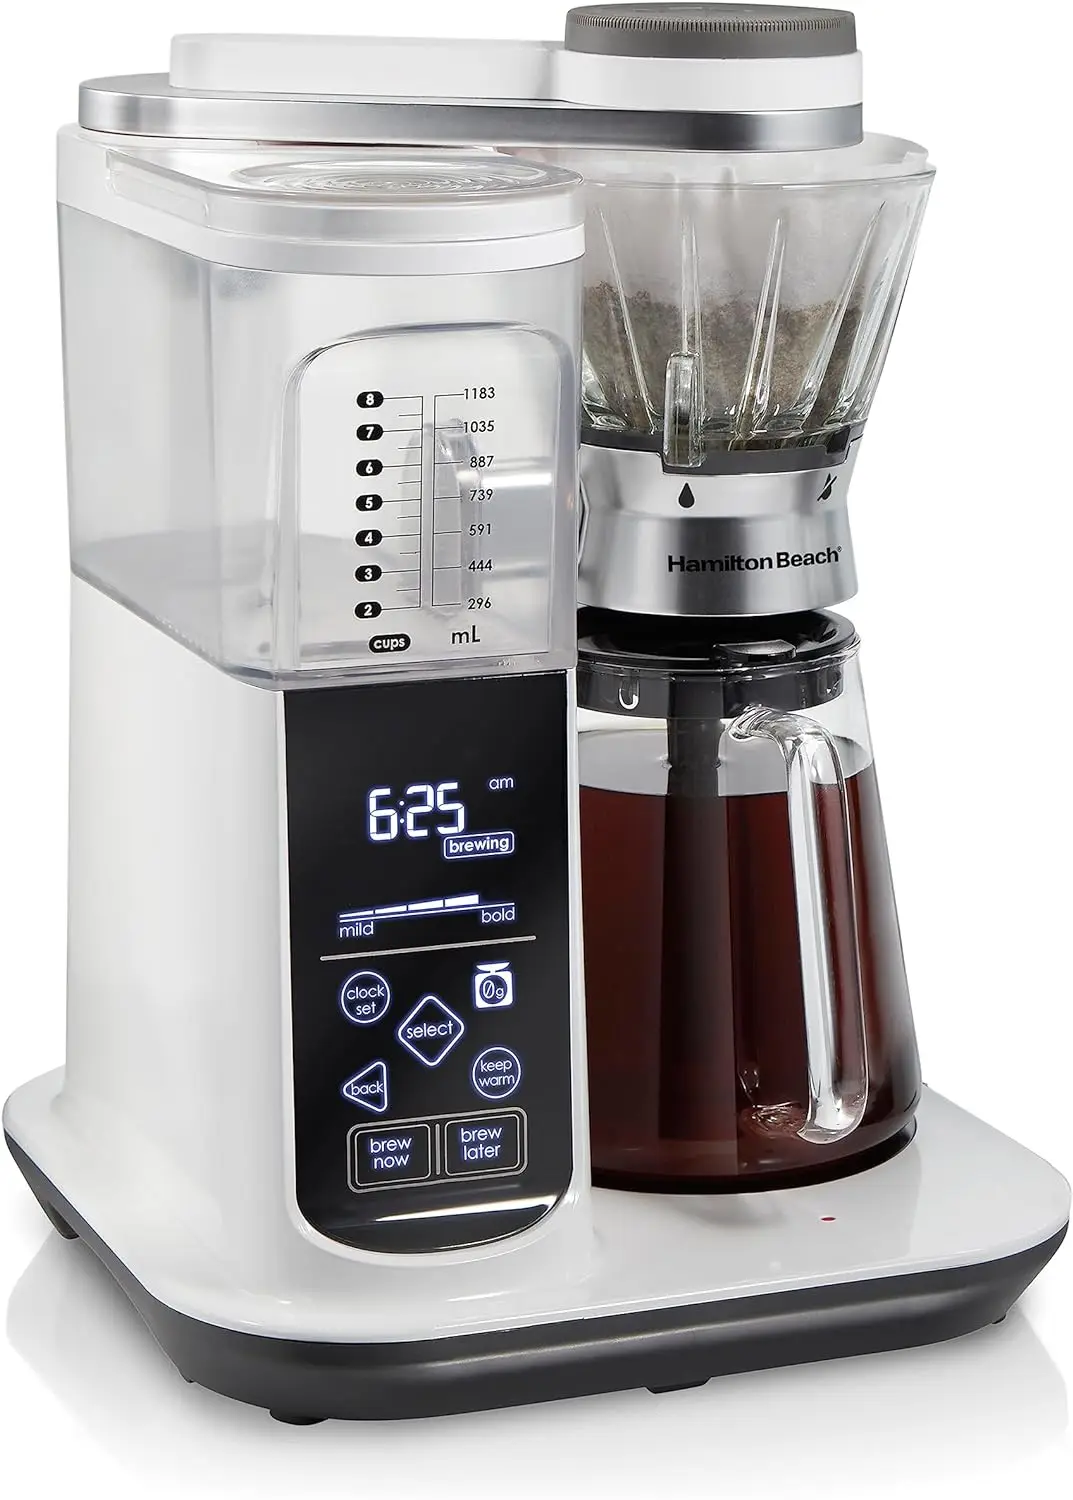 

Программируемая автоматическая кофеварка для приготовления пива или ручная капельница с 5 прочными стенками и встроенной шкалой, 8 чашек, с